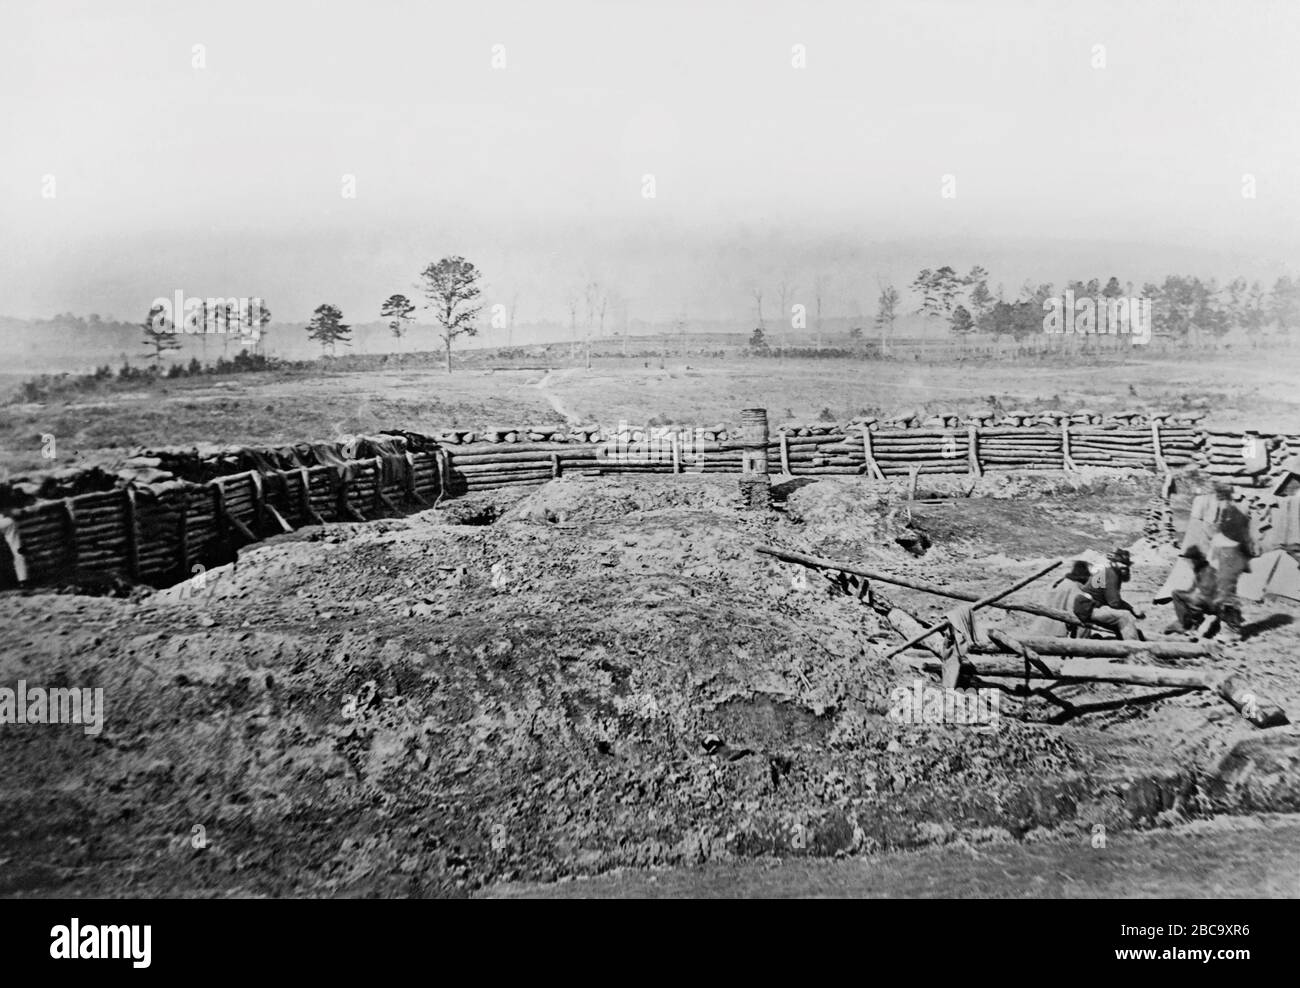 Soldats à l'intérieur de Confederate Fortification, Atlanta, Géorgie, États-Unis, 1864 Banque D'Images